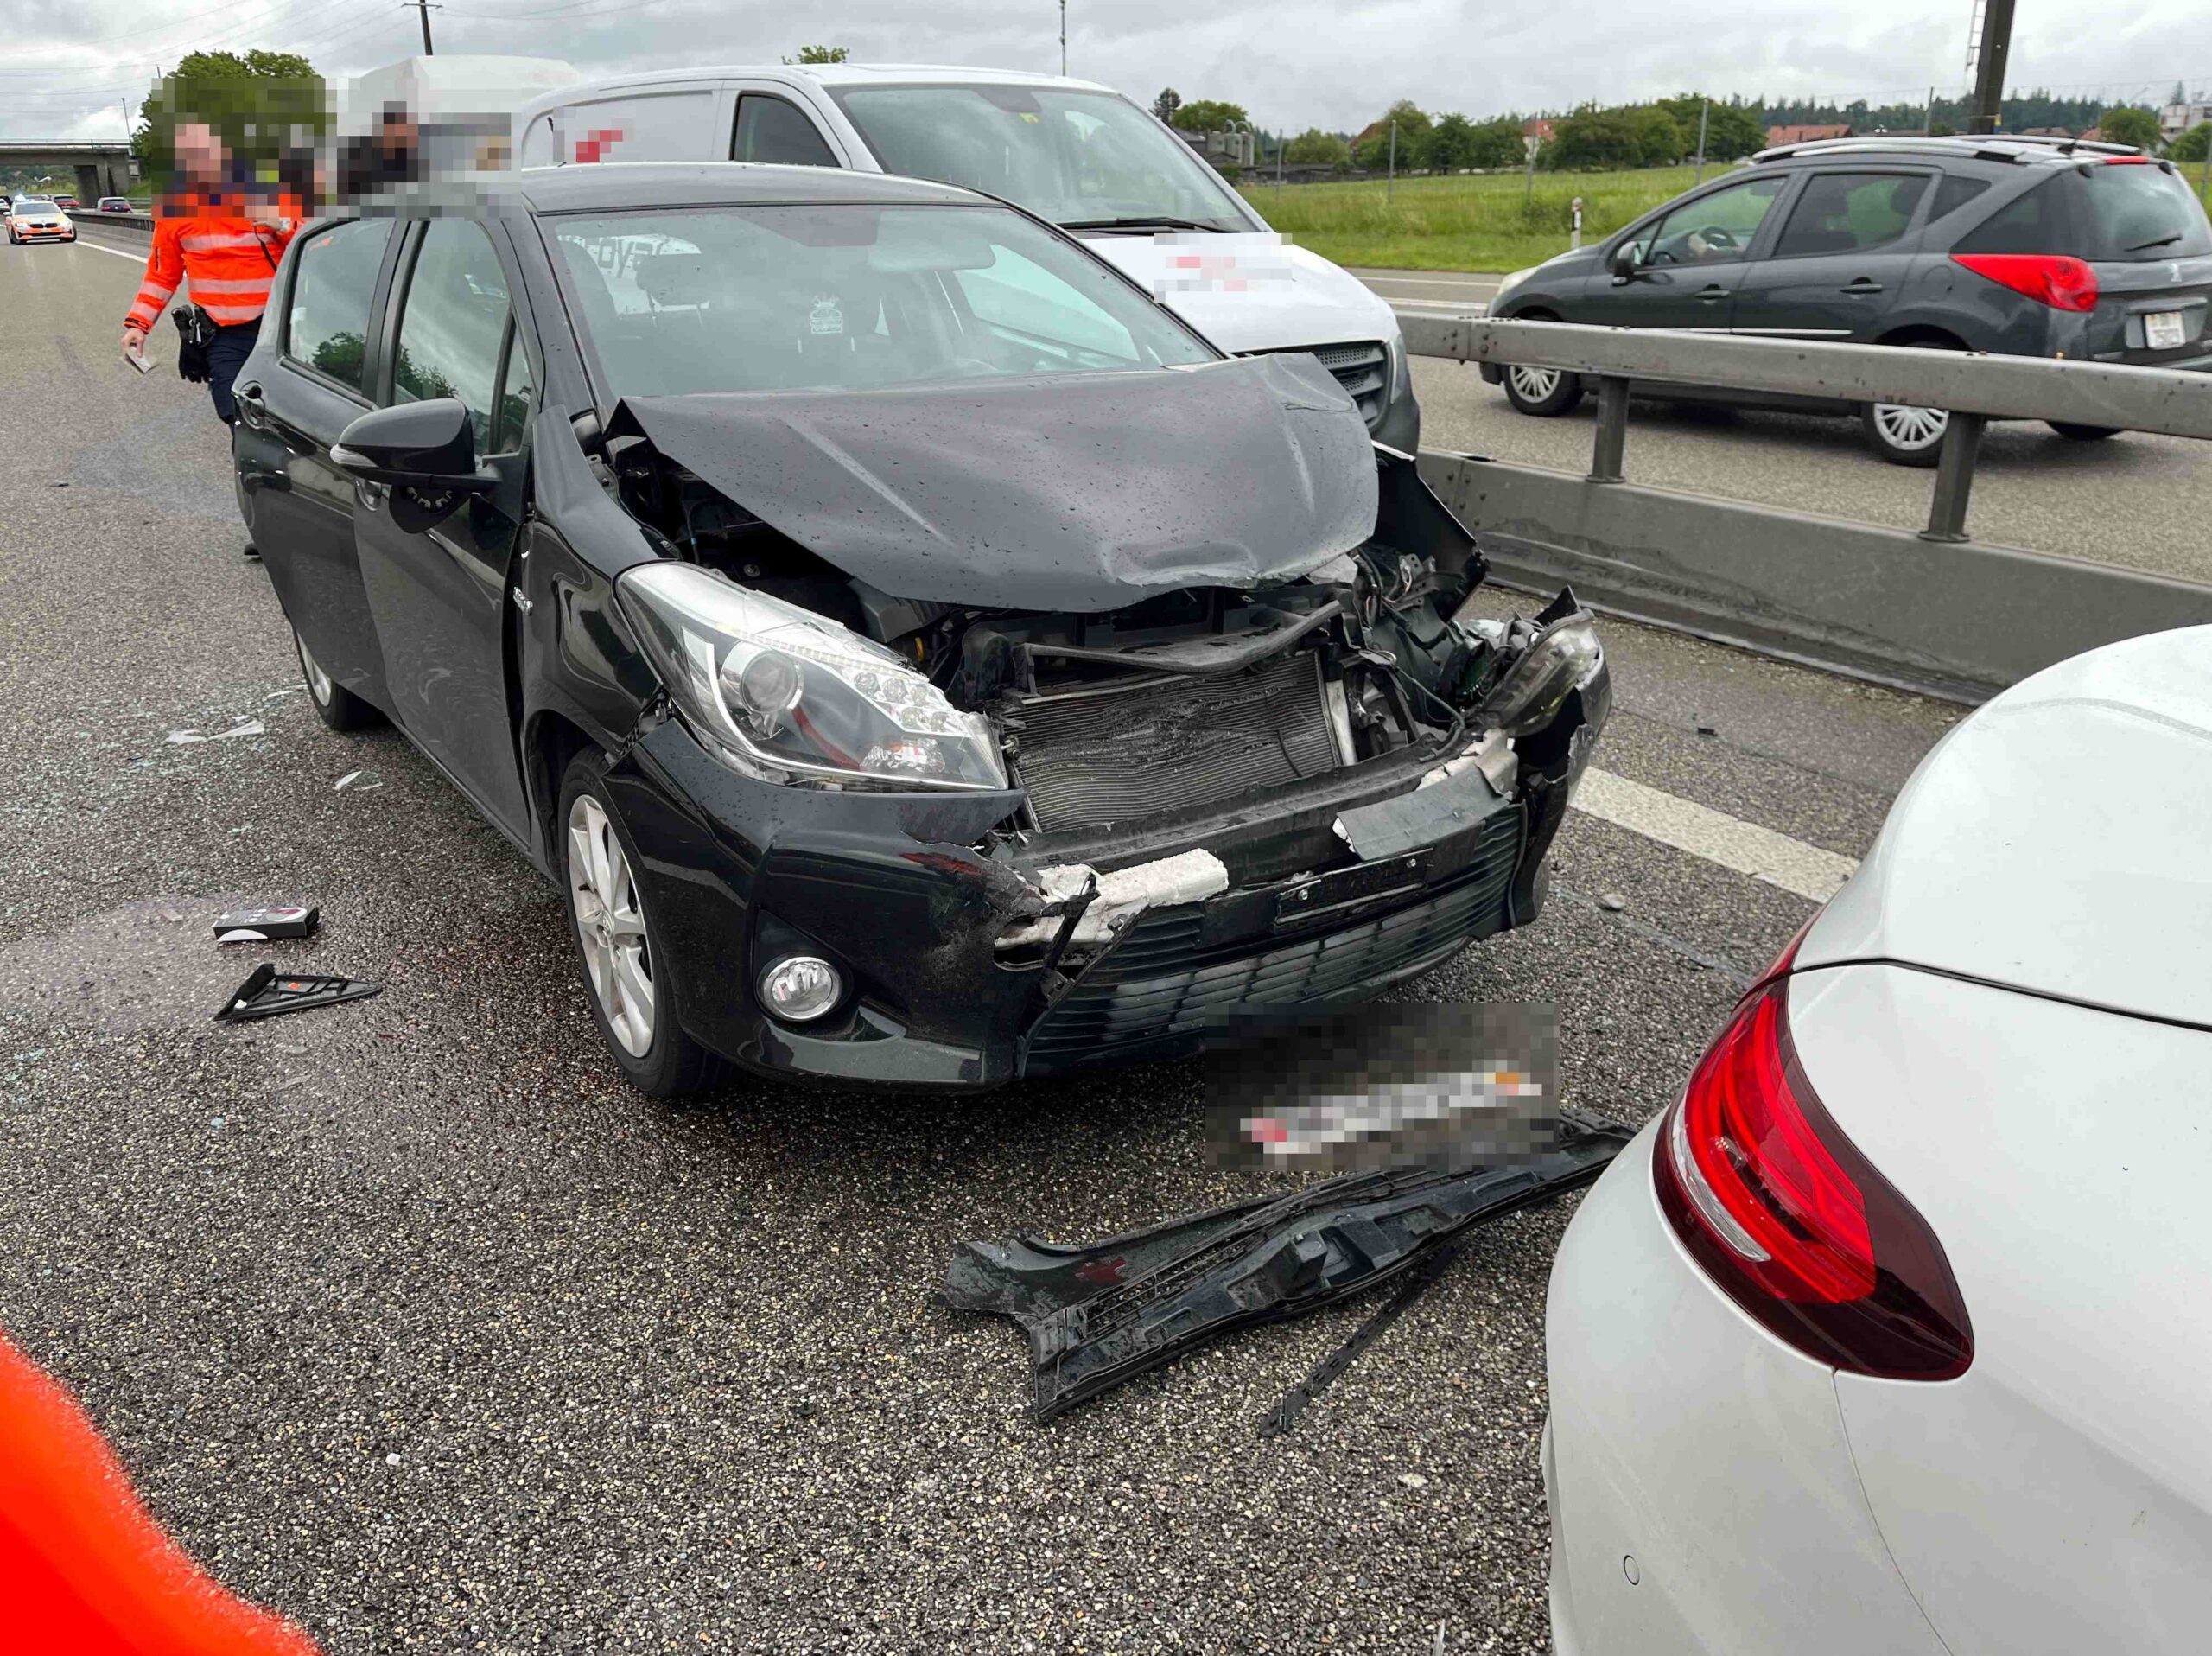 Autobahn A1 bei Niederbipp - Auffahrkollision mit fünf beteiligten Fahrzeugen niemand verletzt